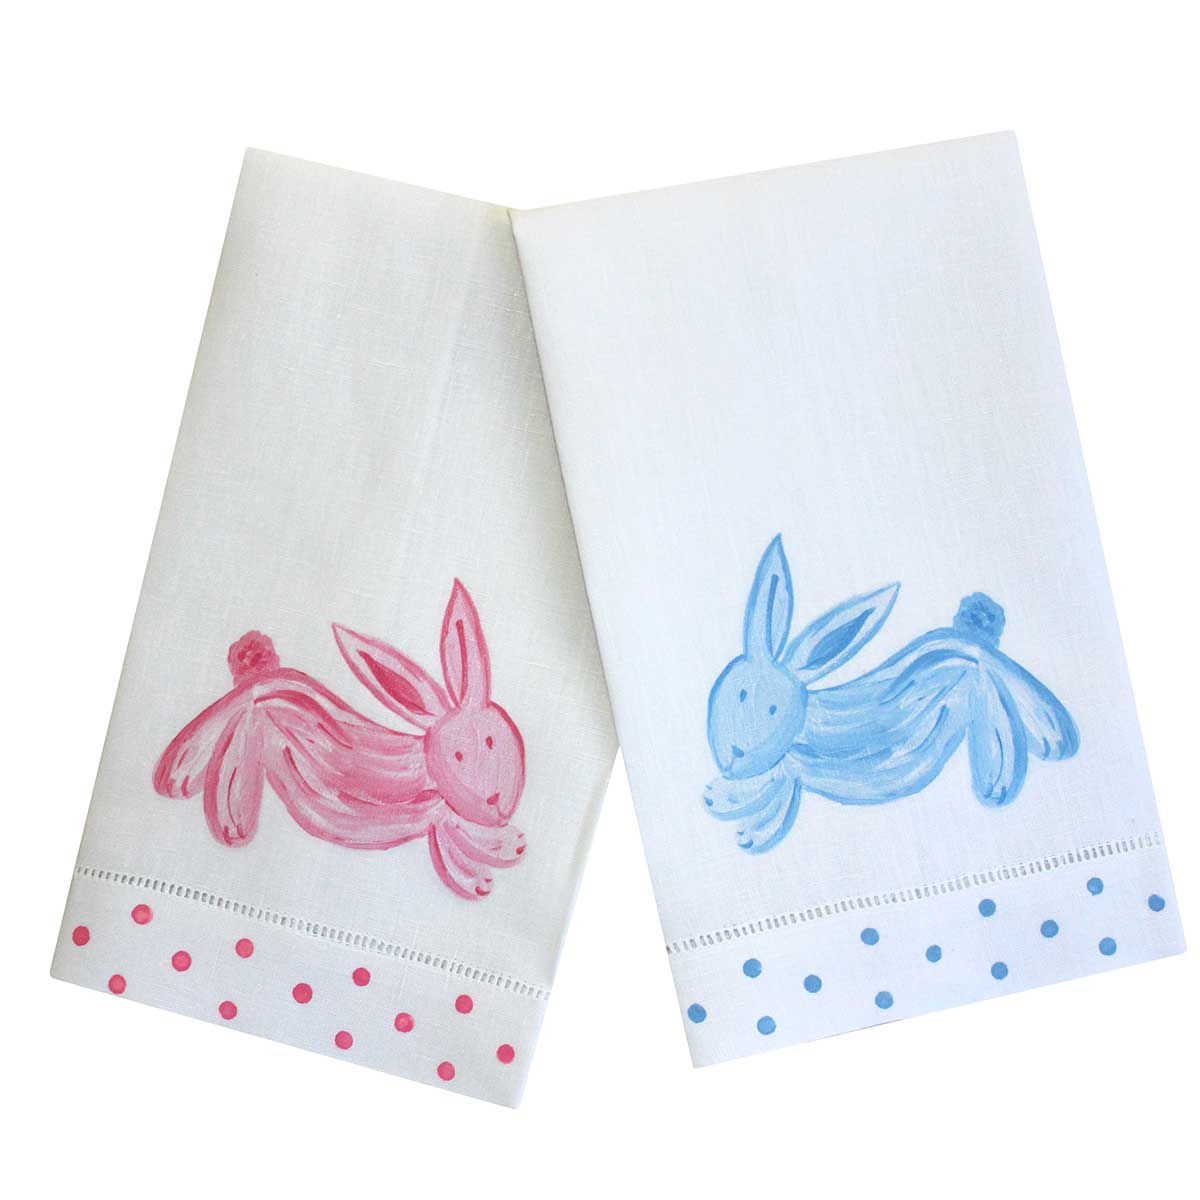 Bunny Linen Guest Towels